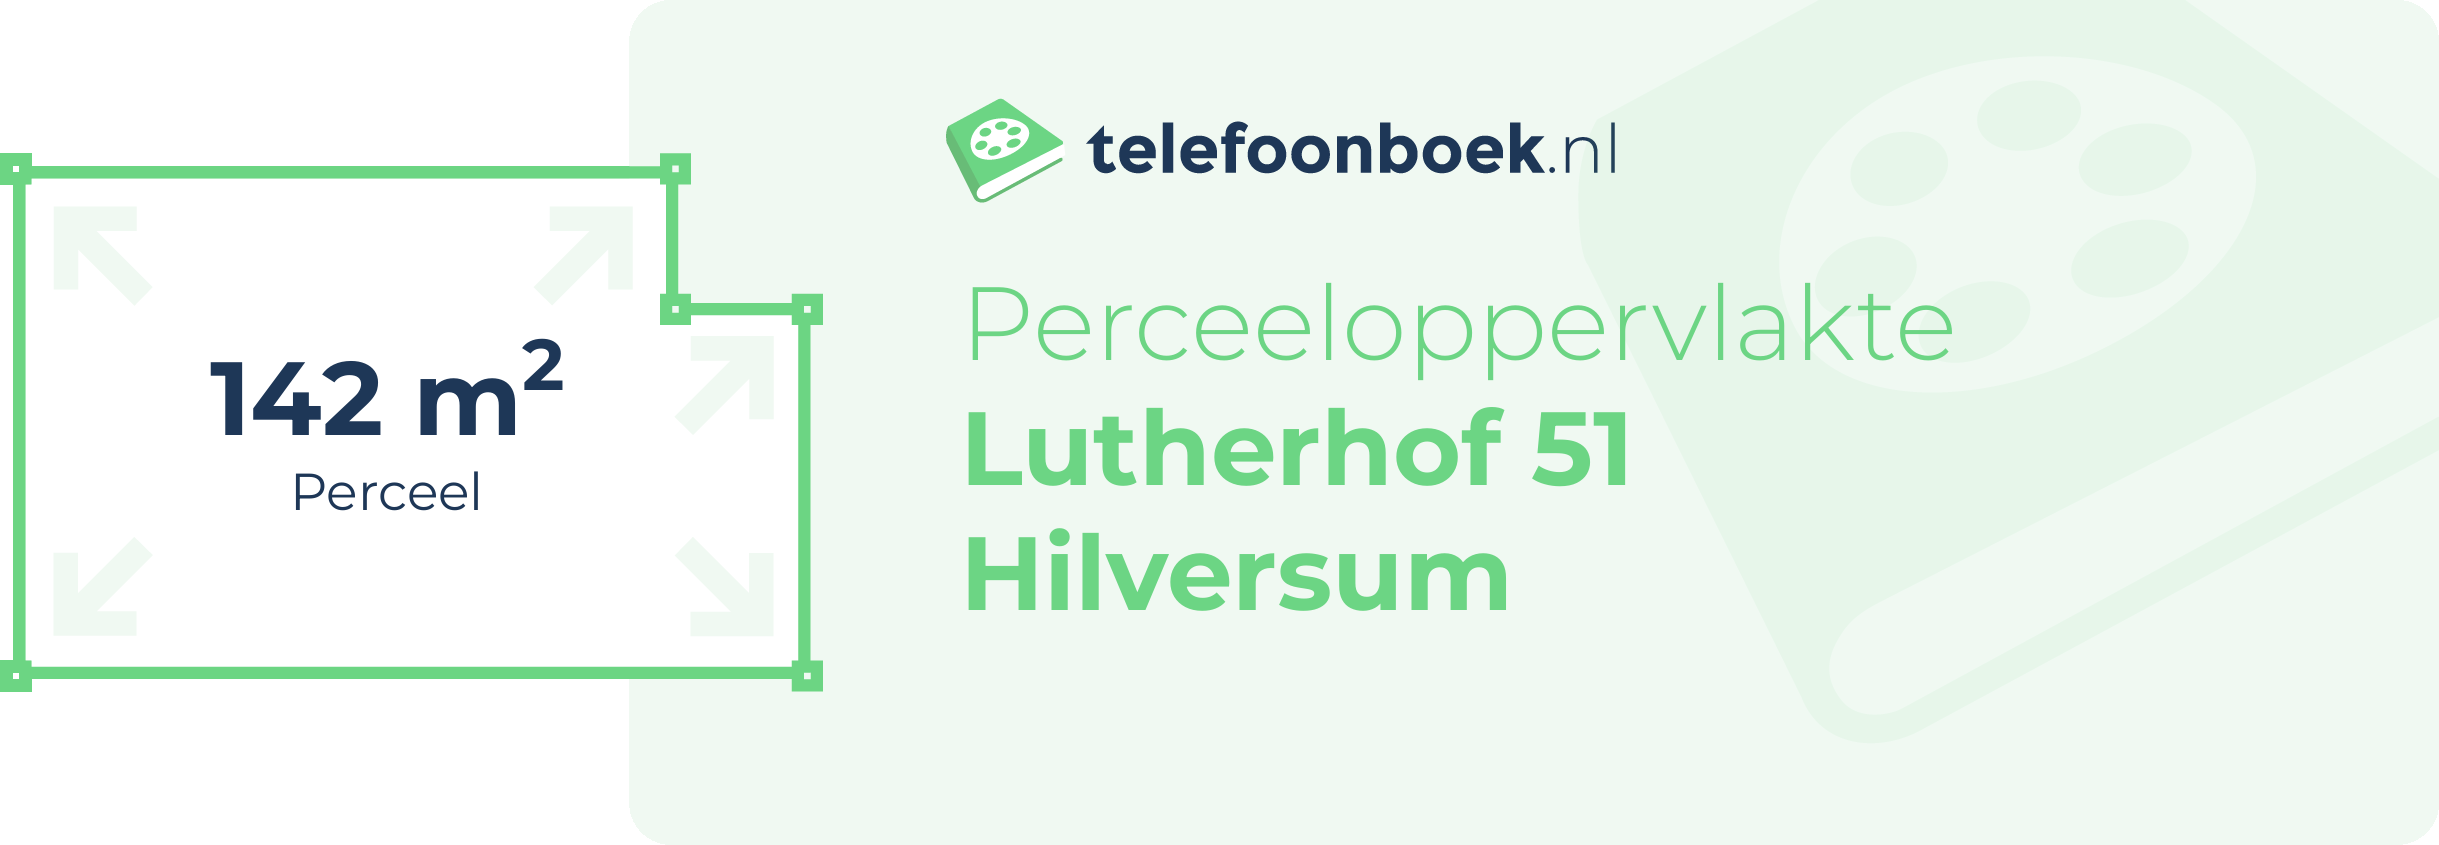 Perceeloppervlakte Lutherhof 51 Hilversum